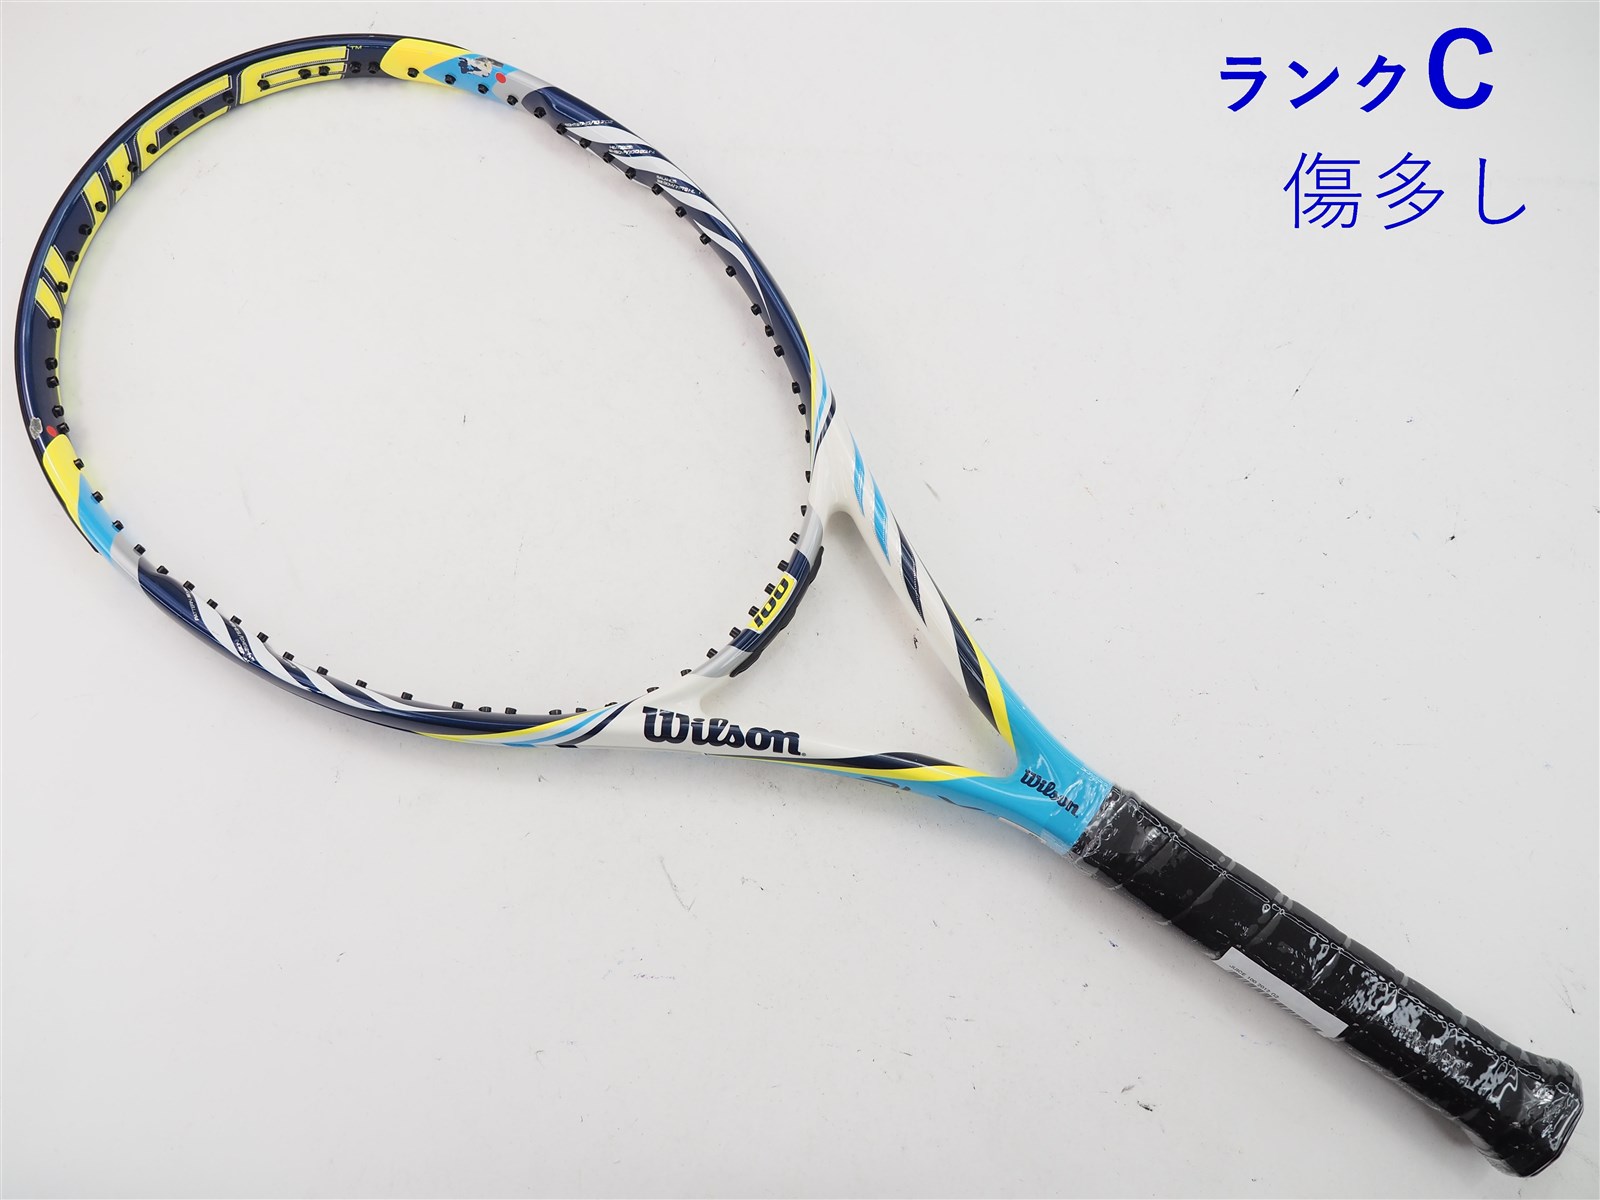 ガット無しグリップサイズテニスラケット ウィルソン ジュース 100エル 2013年モデル (L2)WILSON JUICE 100L 2013